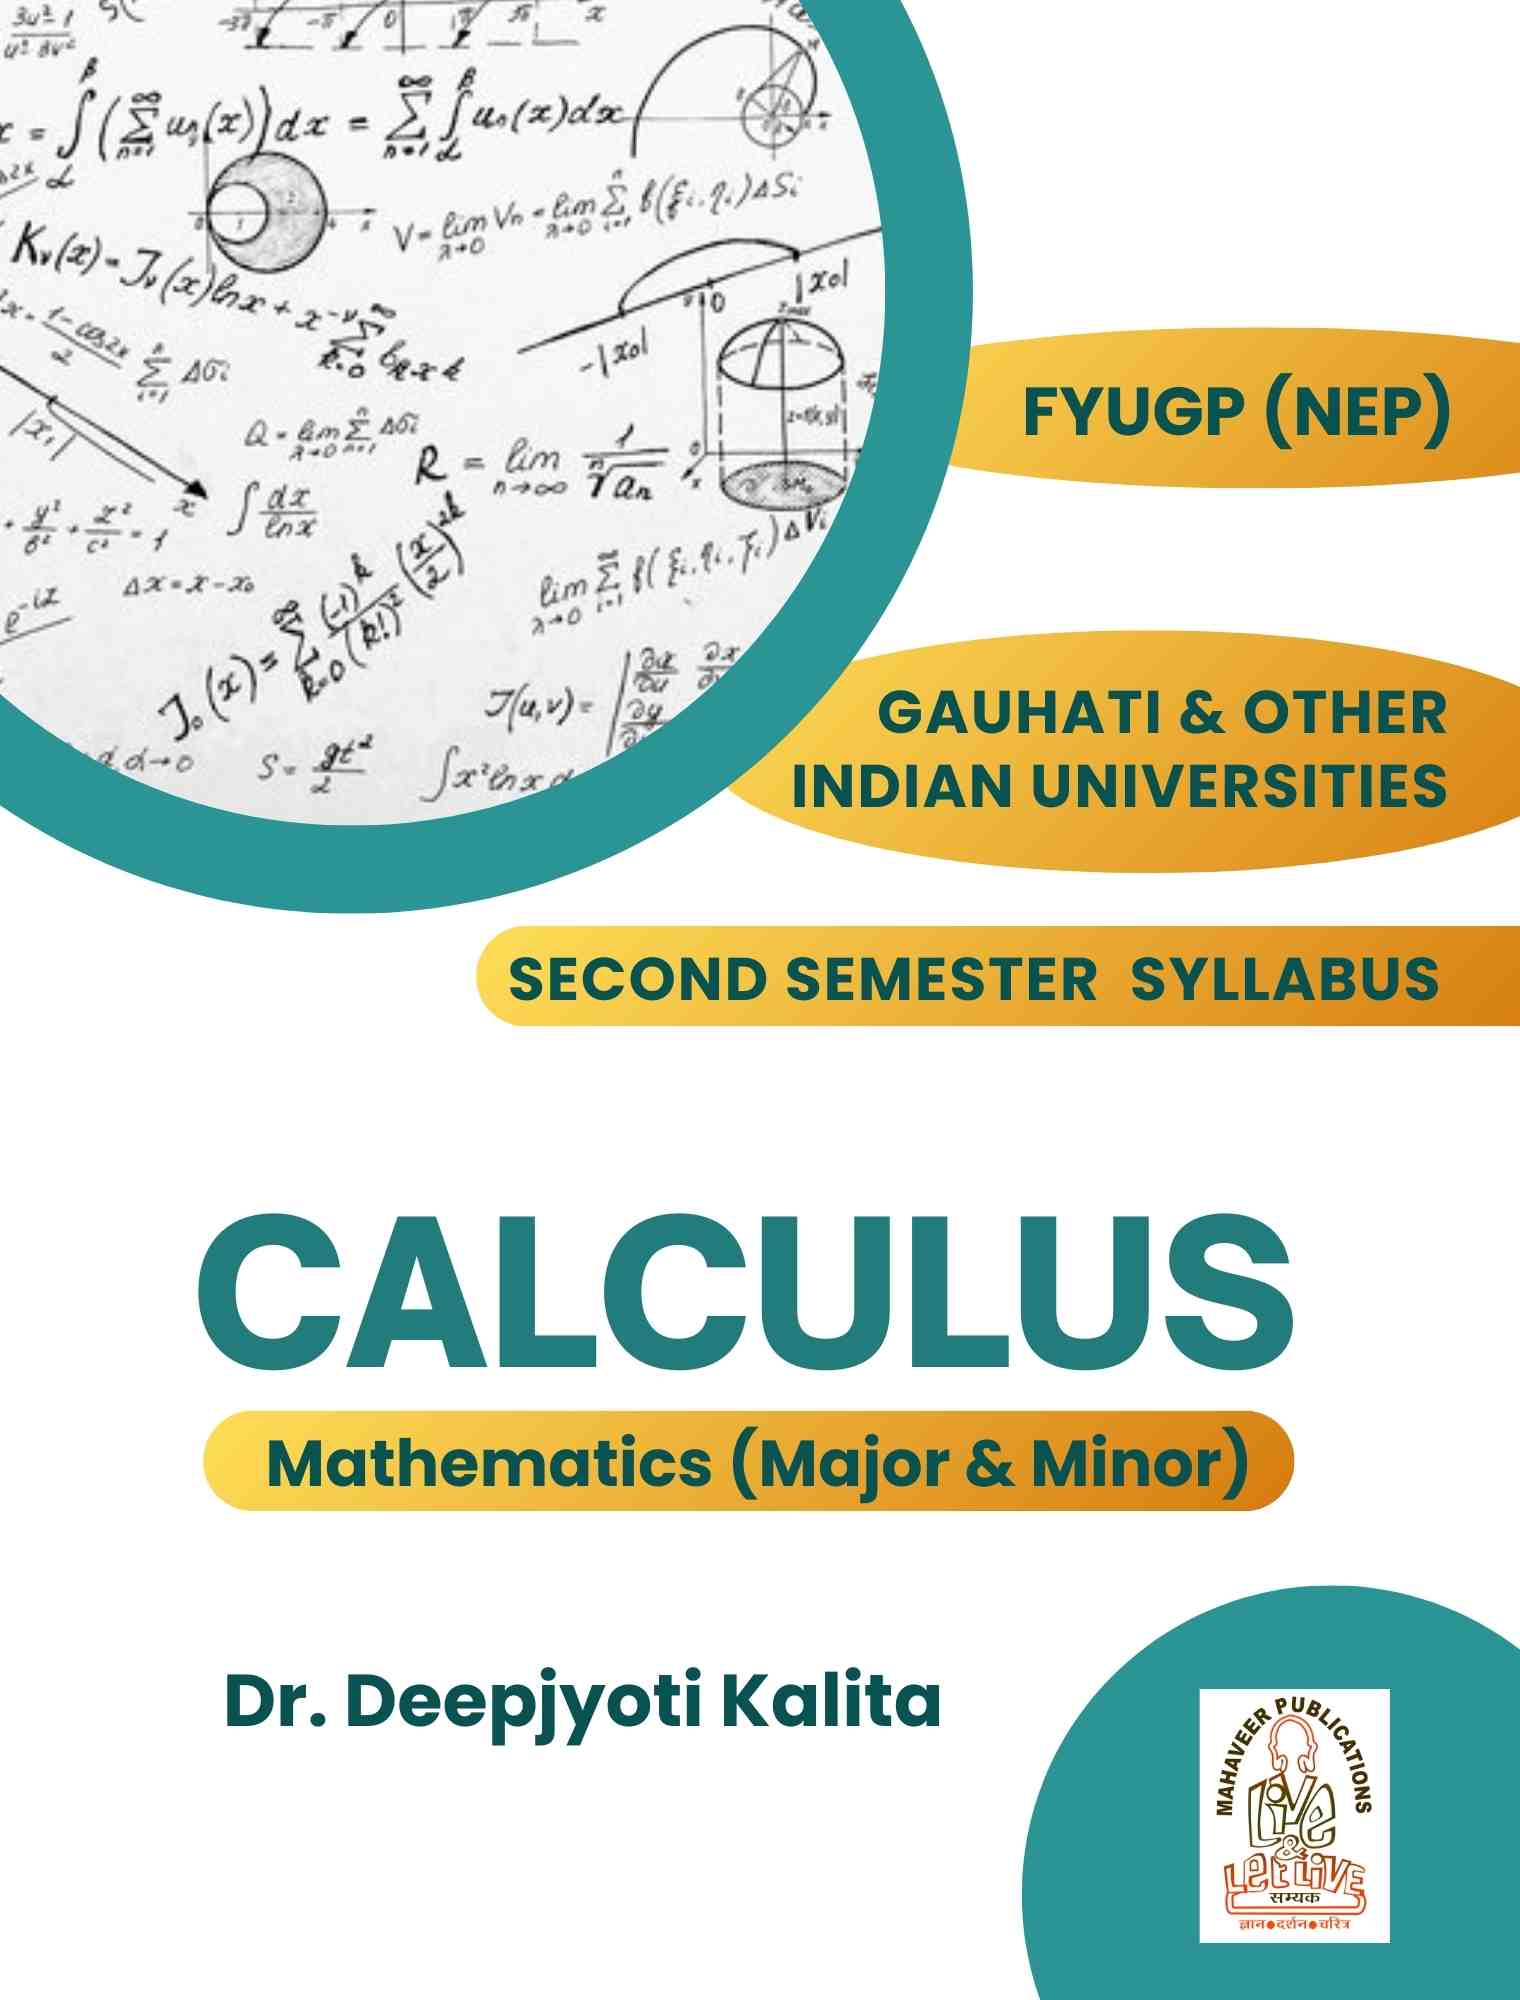 Calculus : Dr, Deepjyoti Kalita